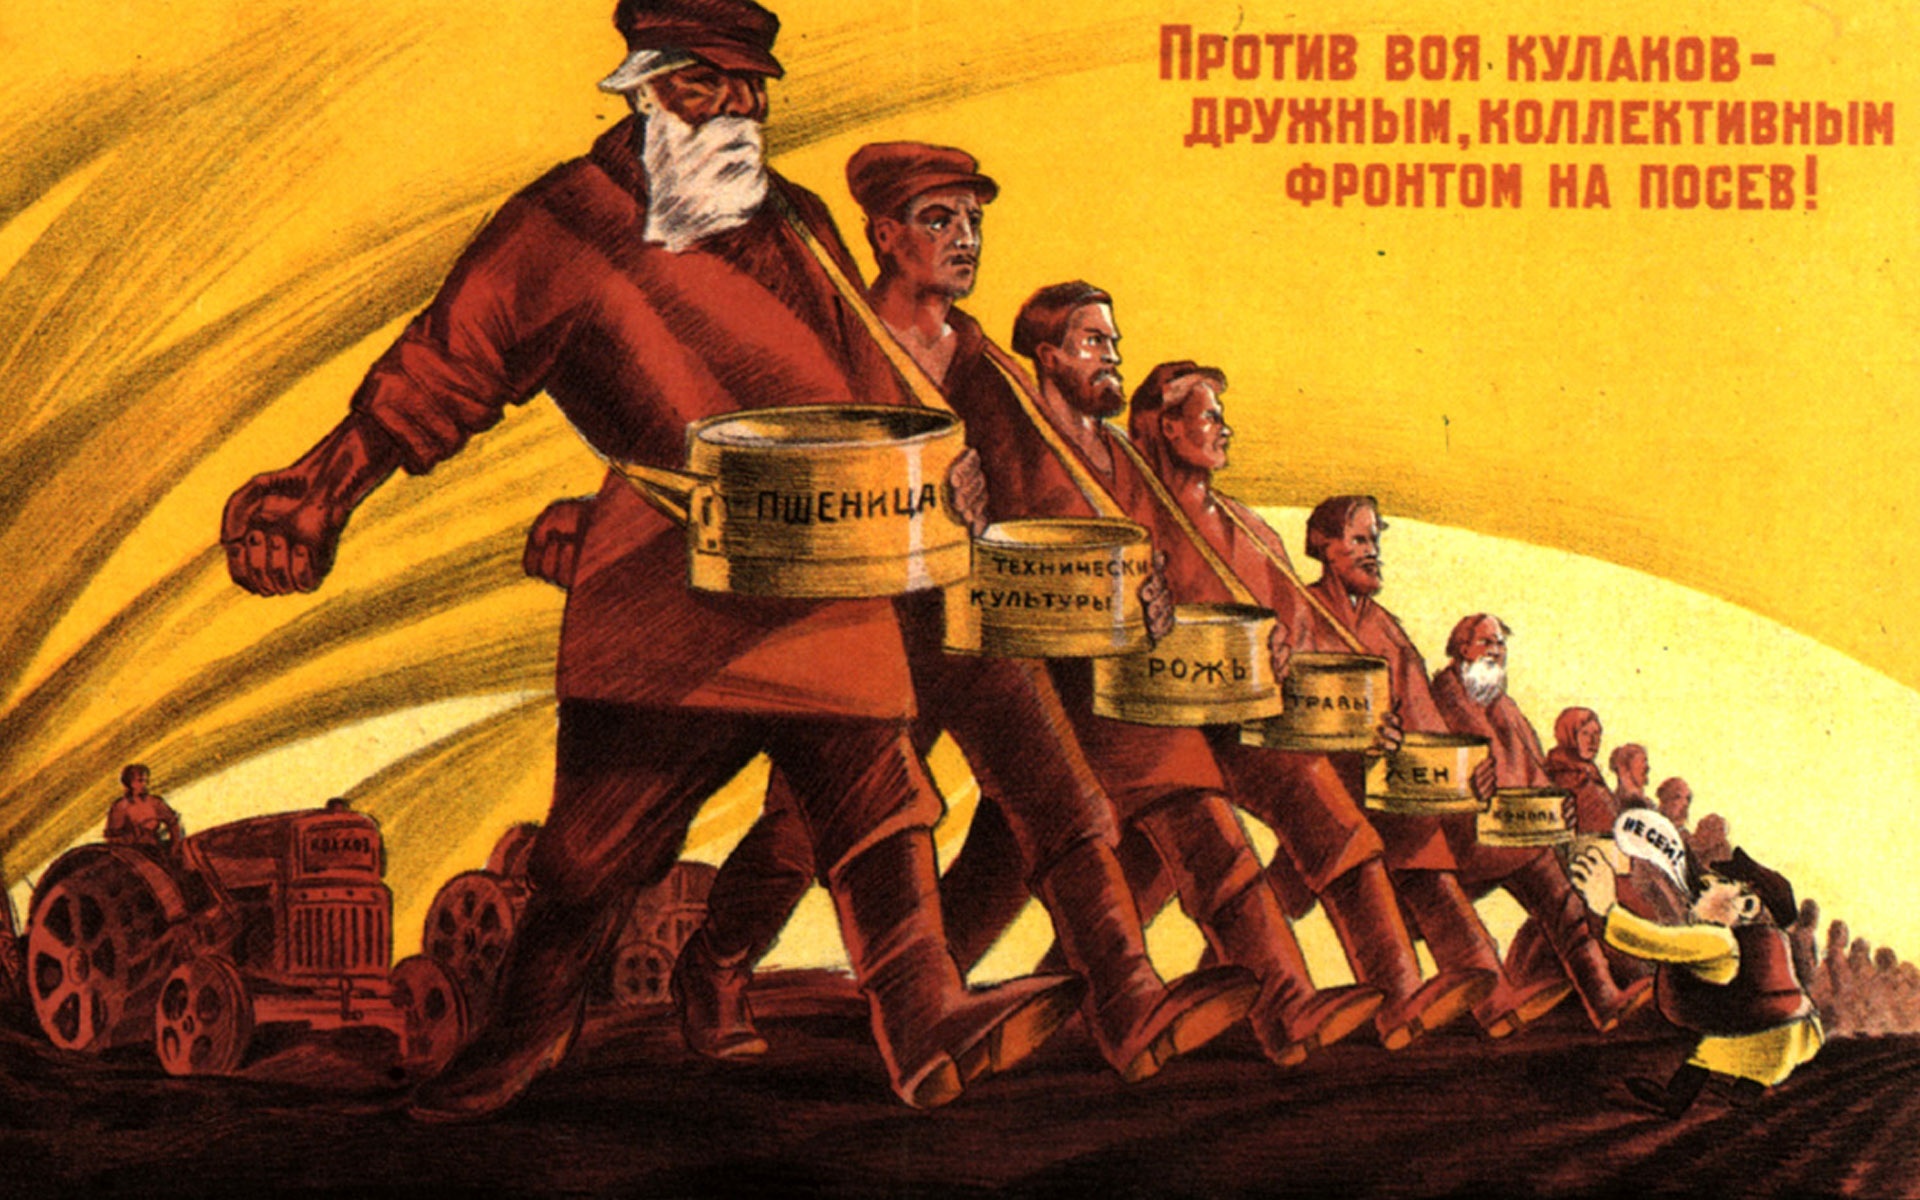 Кулаки кулачество. Коллективизация в СССР постеры. Коллективизация 1930 плакаты. Плакат кулаки раскулачивание. Пропаганда коллективизации СССР.